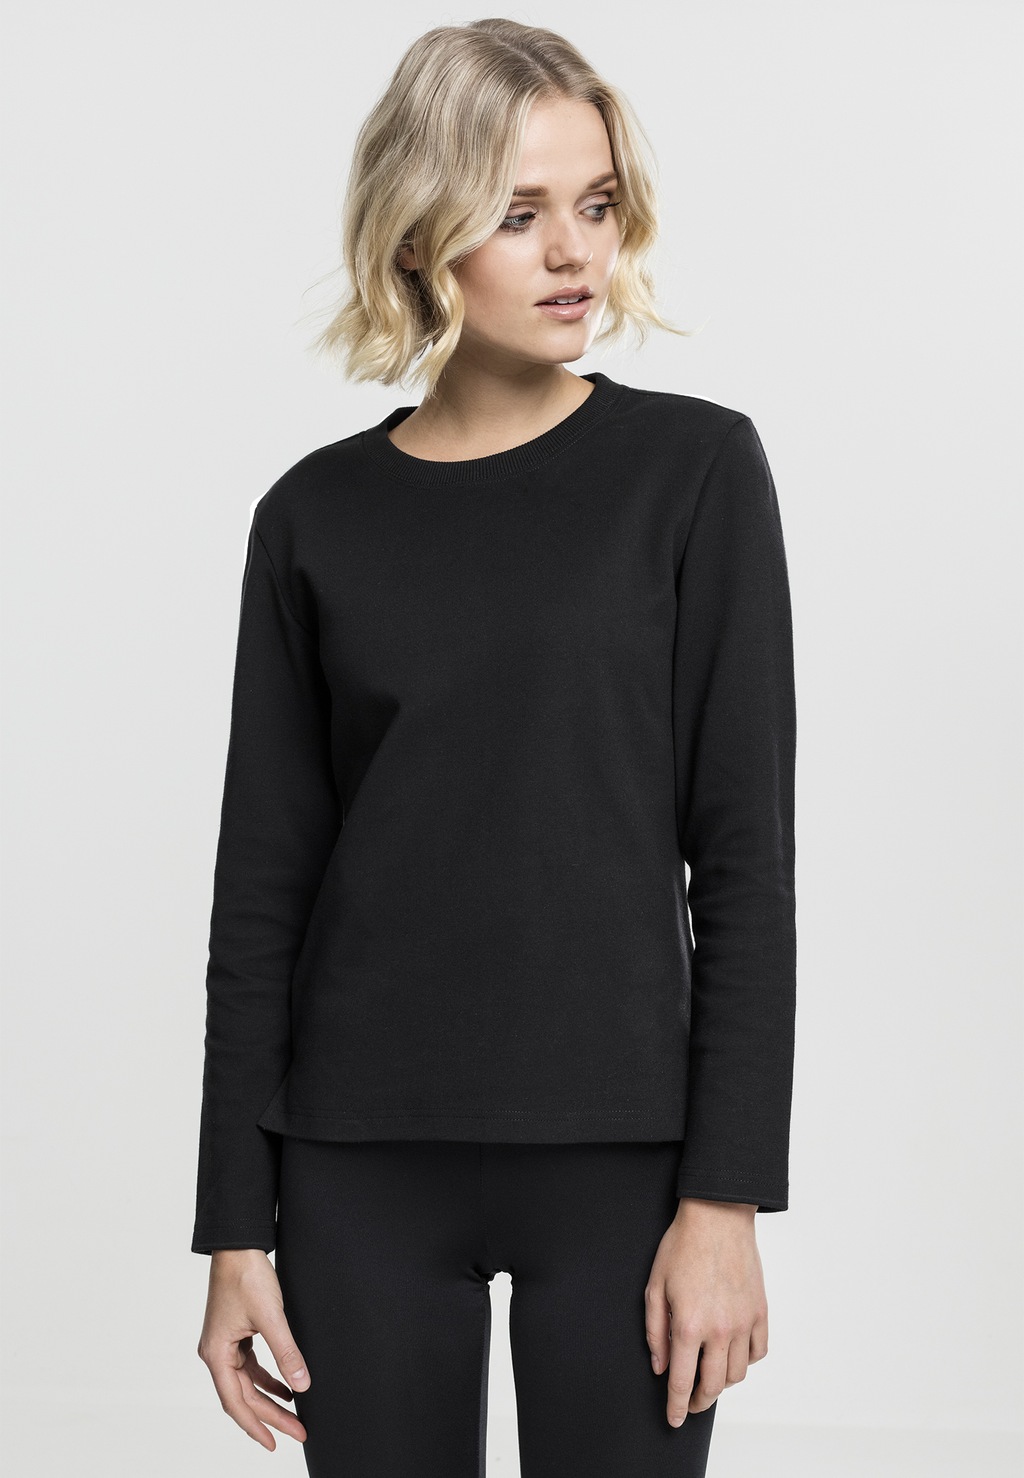 Urban Classics Damen Sweater Athletic Interlock Crewneck günstig online kaufen